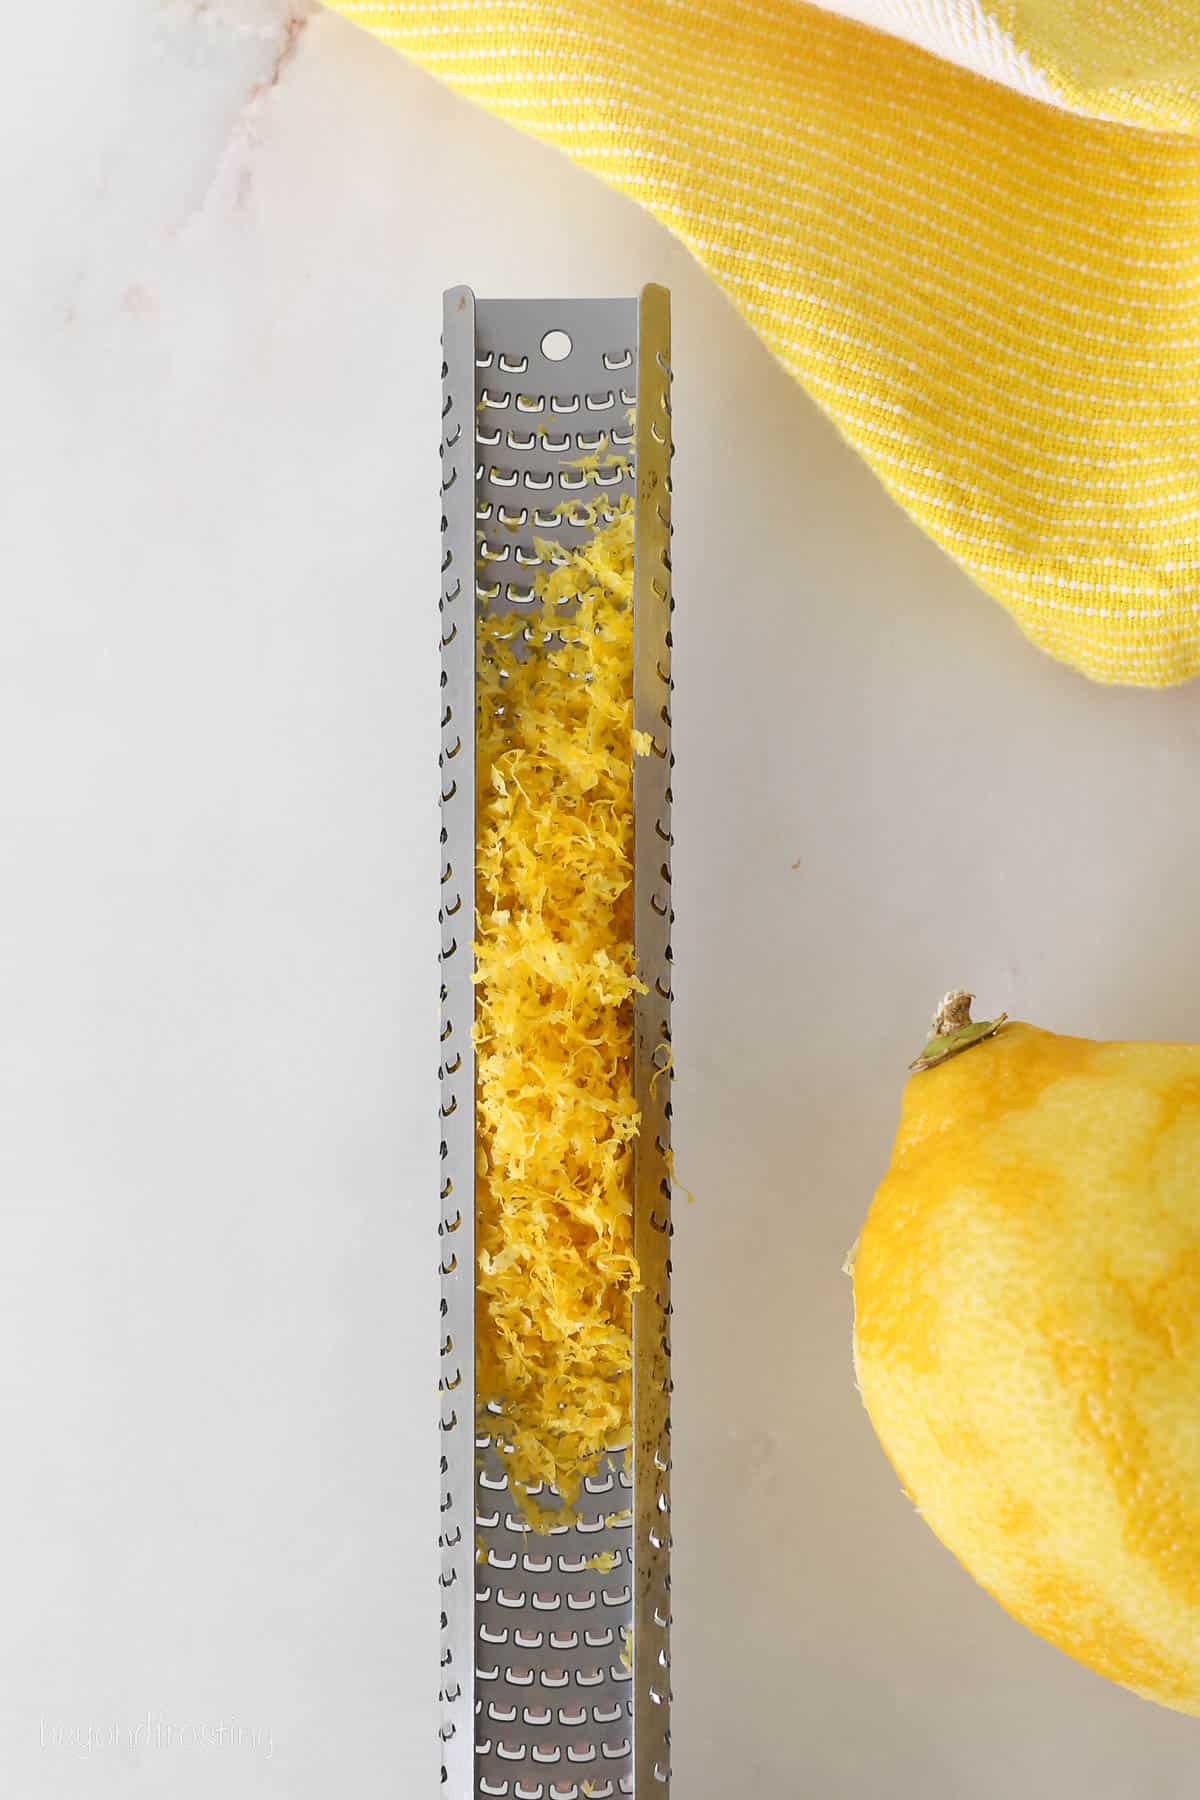 A lemon zester with zest, next to a zested lemon.